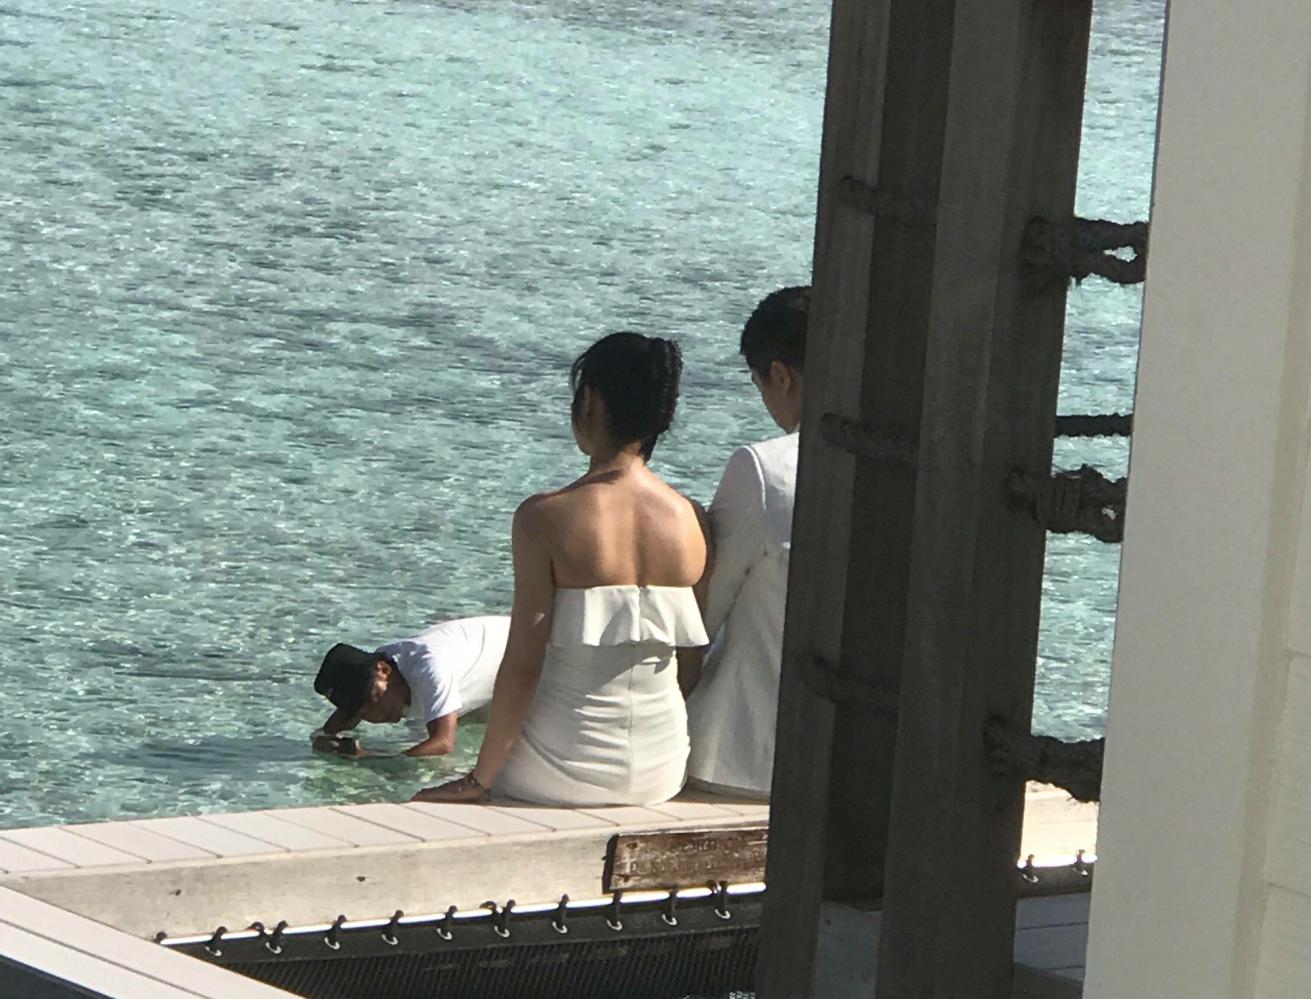 陳曉夫婦馬爾代夫重拍婚紗照, 陳妍希瘦瞭不少, 靠在老公肩頭很甜蜜